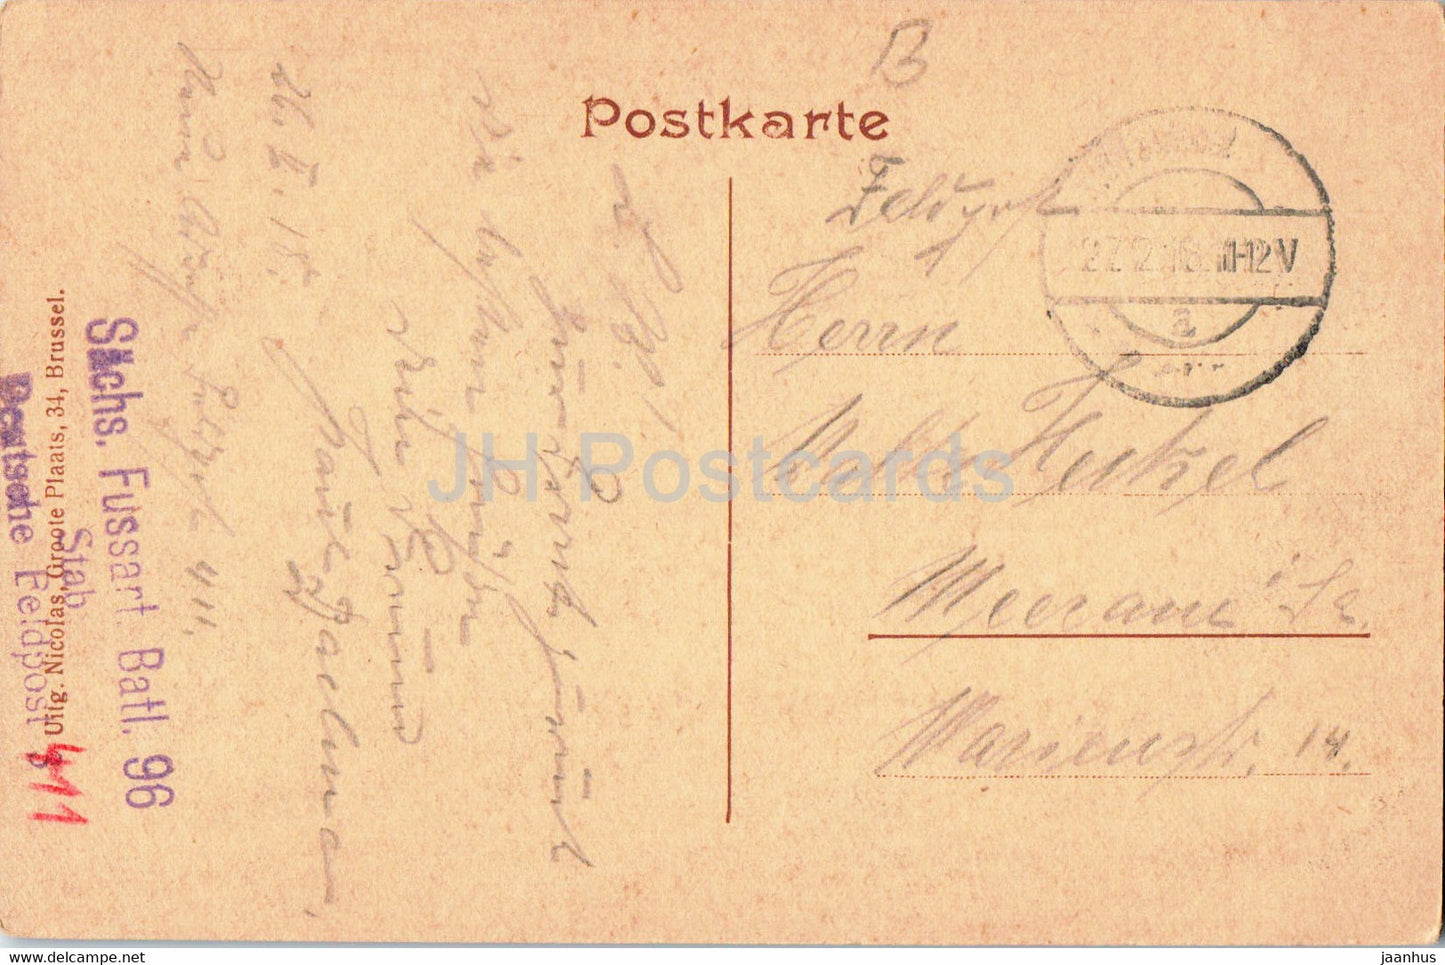 Brüssel - Brüssel - Brüsseler Königspalast - Feldpost - Militärpost - alte Postkarte - 1918 - Belgien - gebraucht